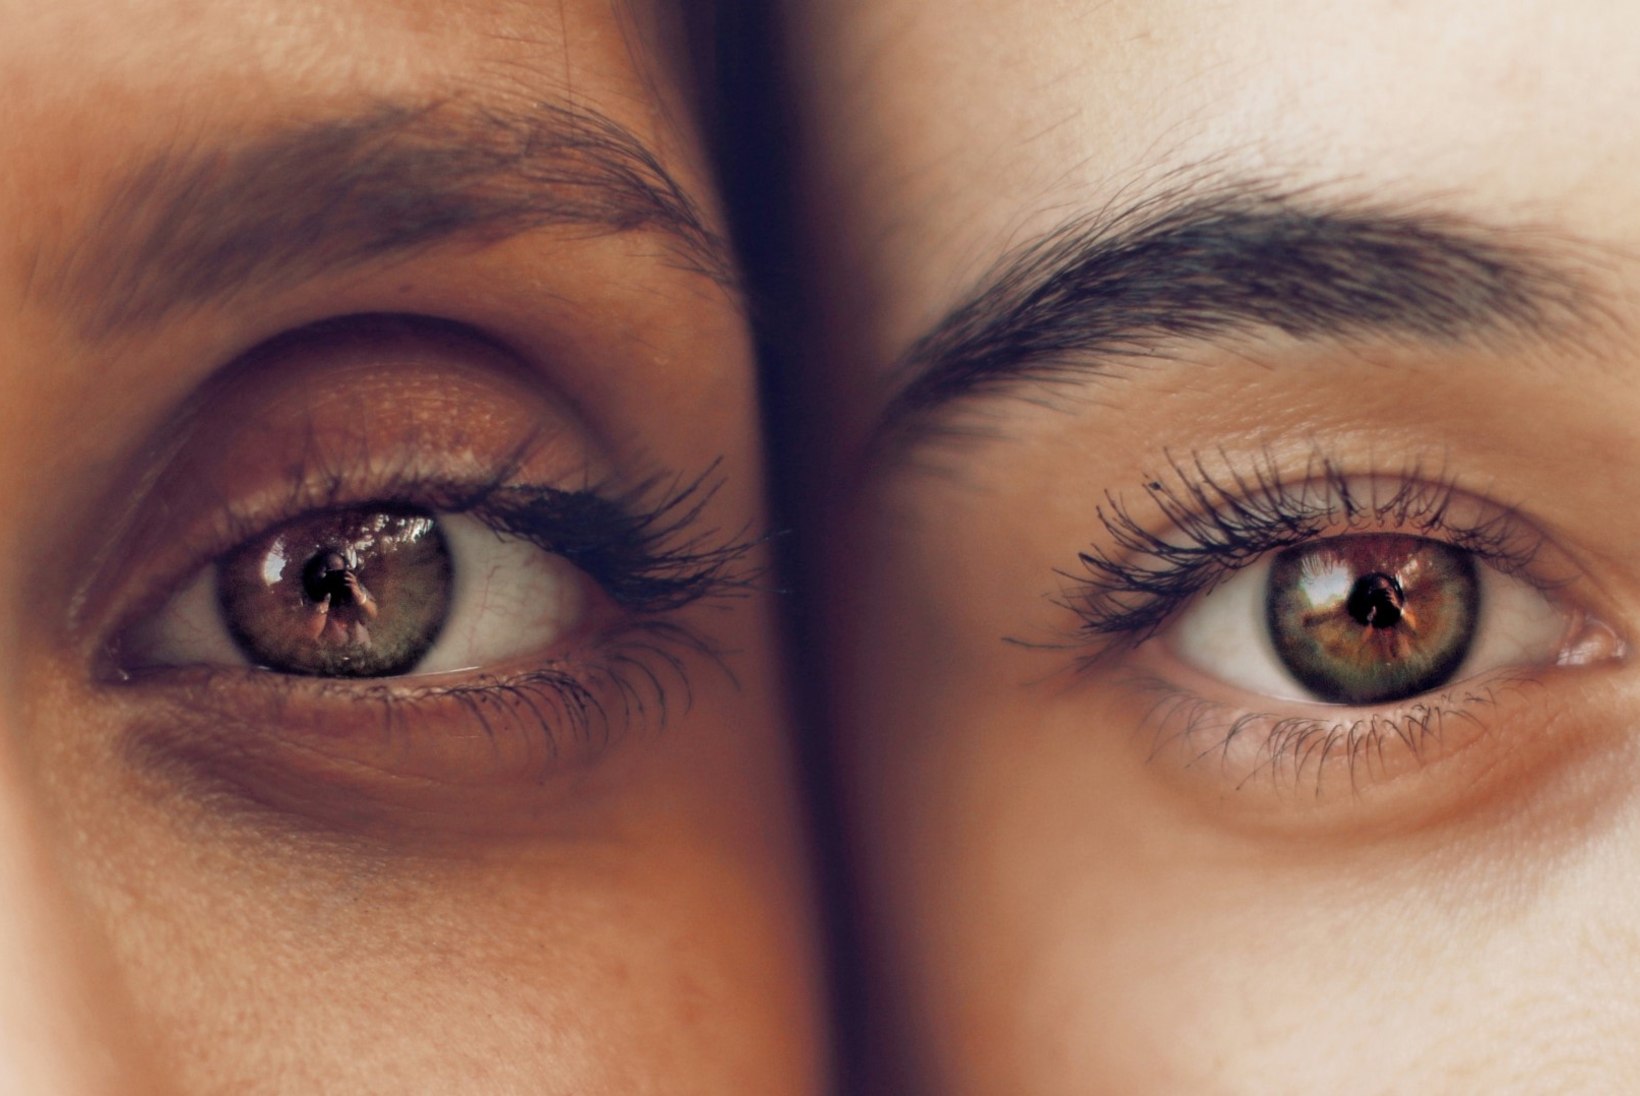 TERVIS | Silmad on kuivad ja tundlikud? Arst annab nõu, kuidas enesetunnet parandada